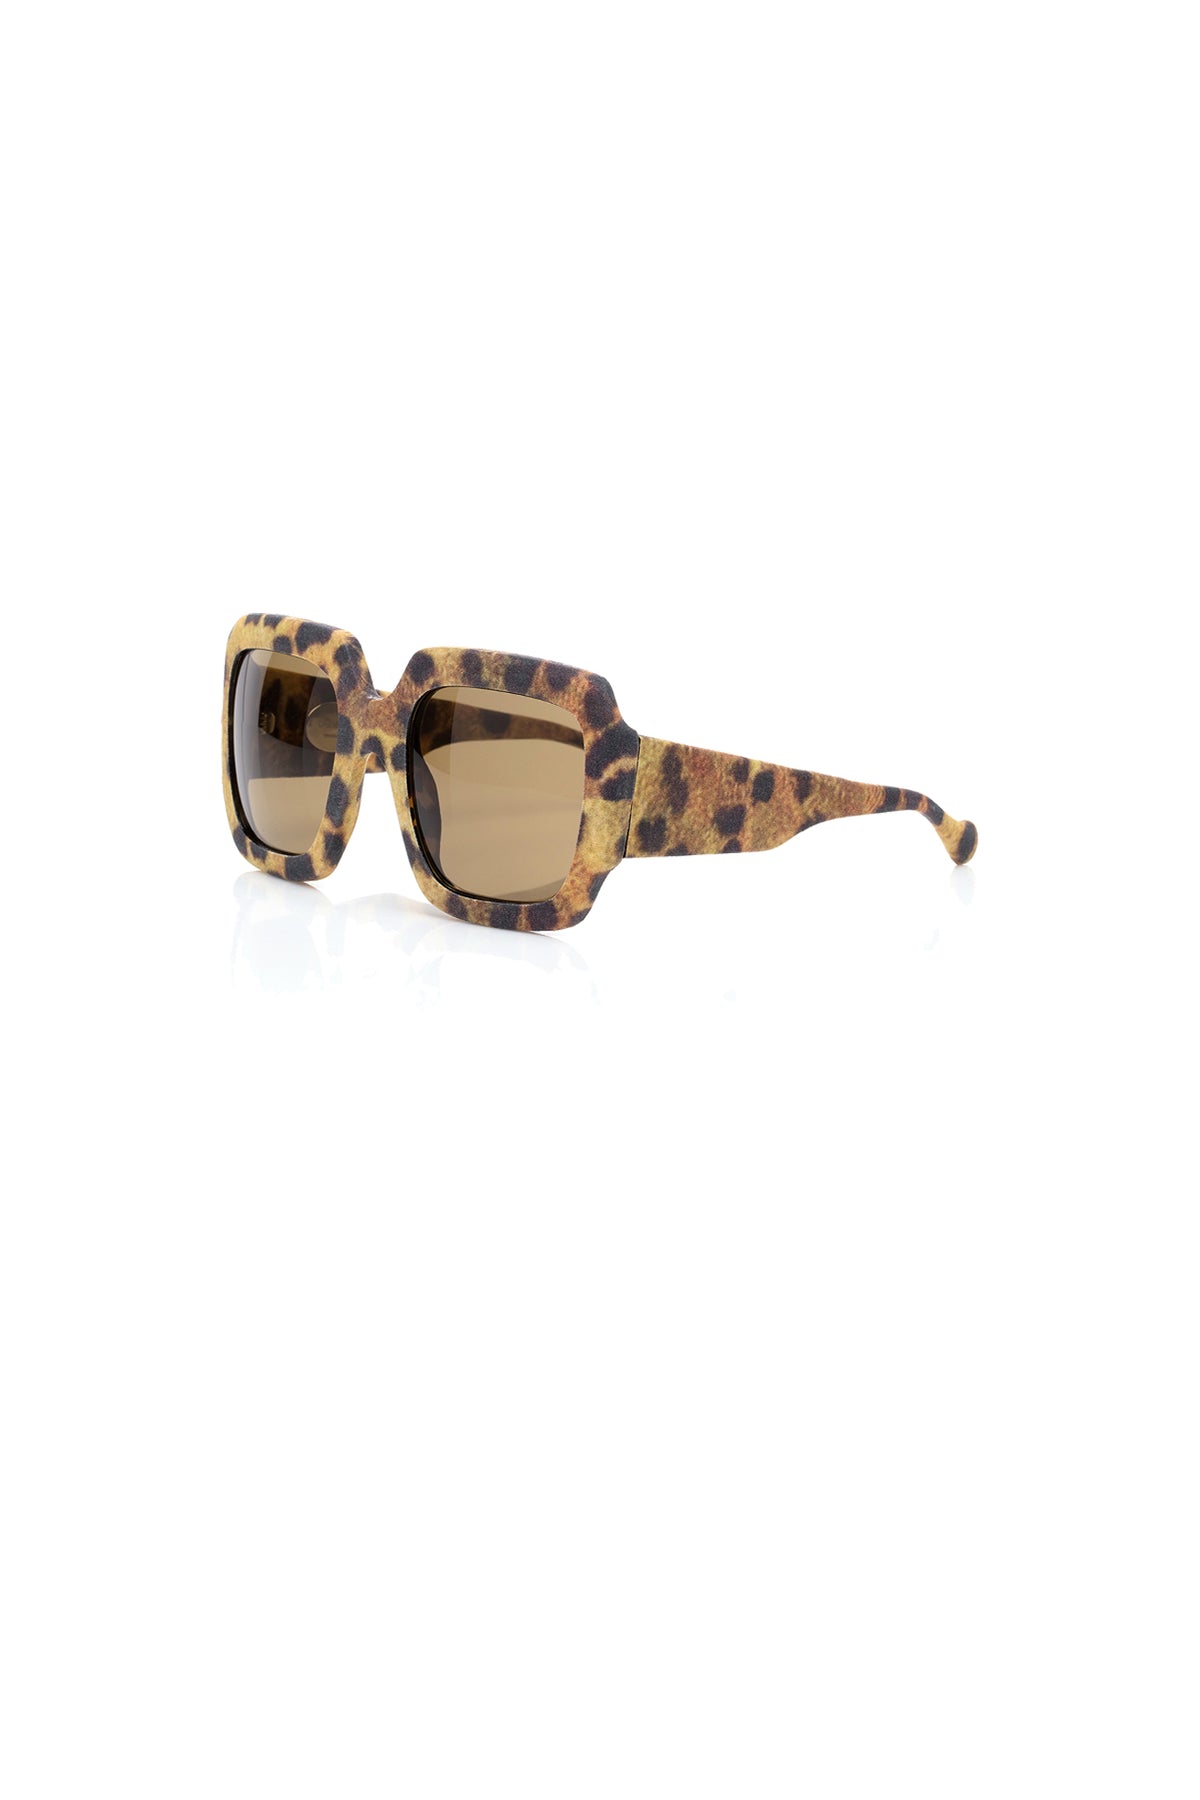 Louis Vuitton - Sunglasses - S-264 